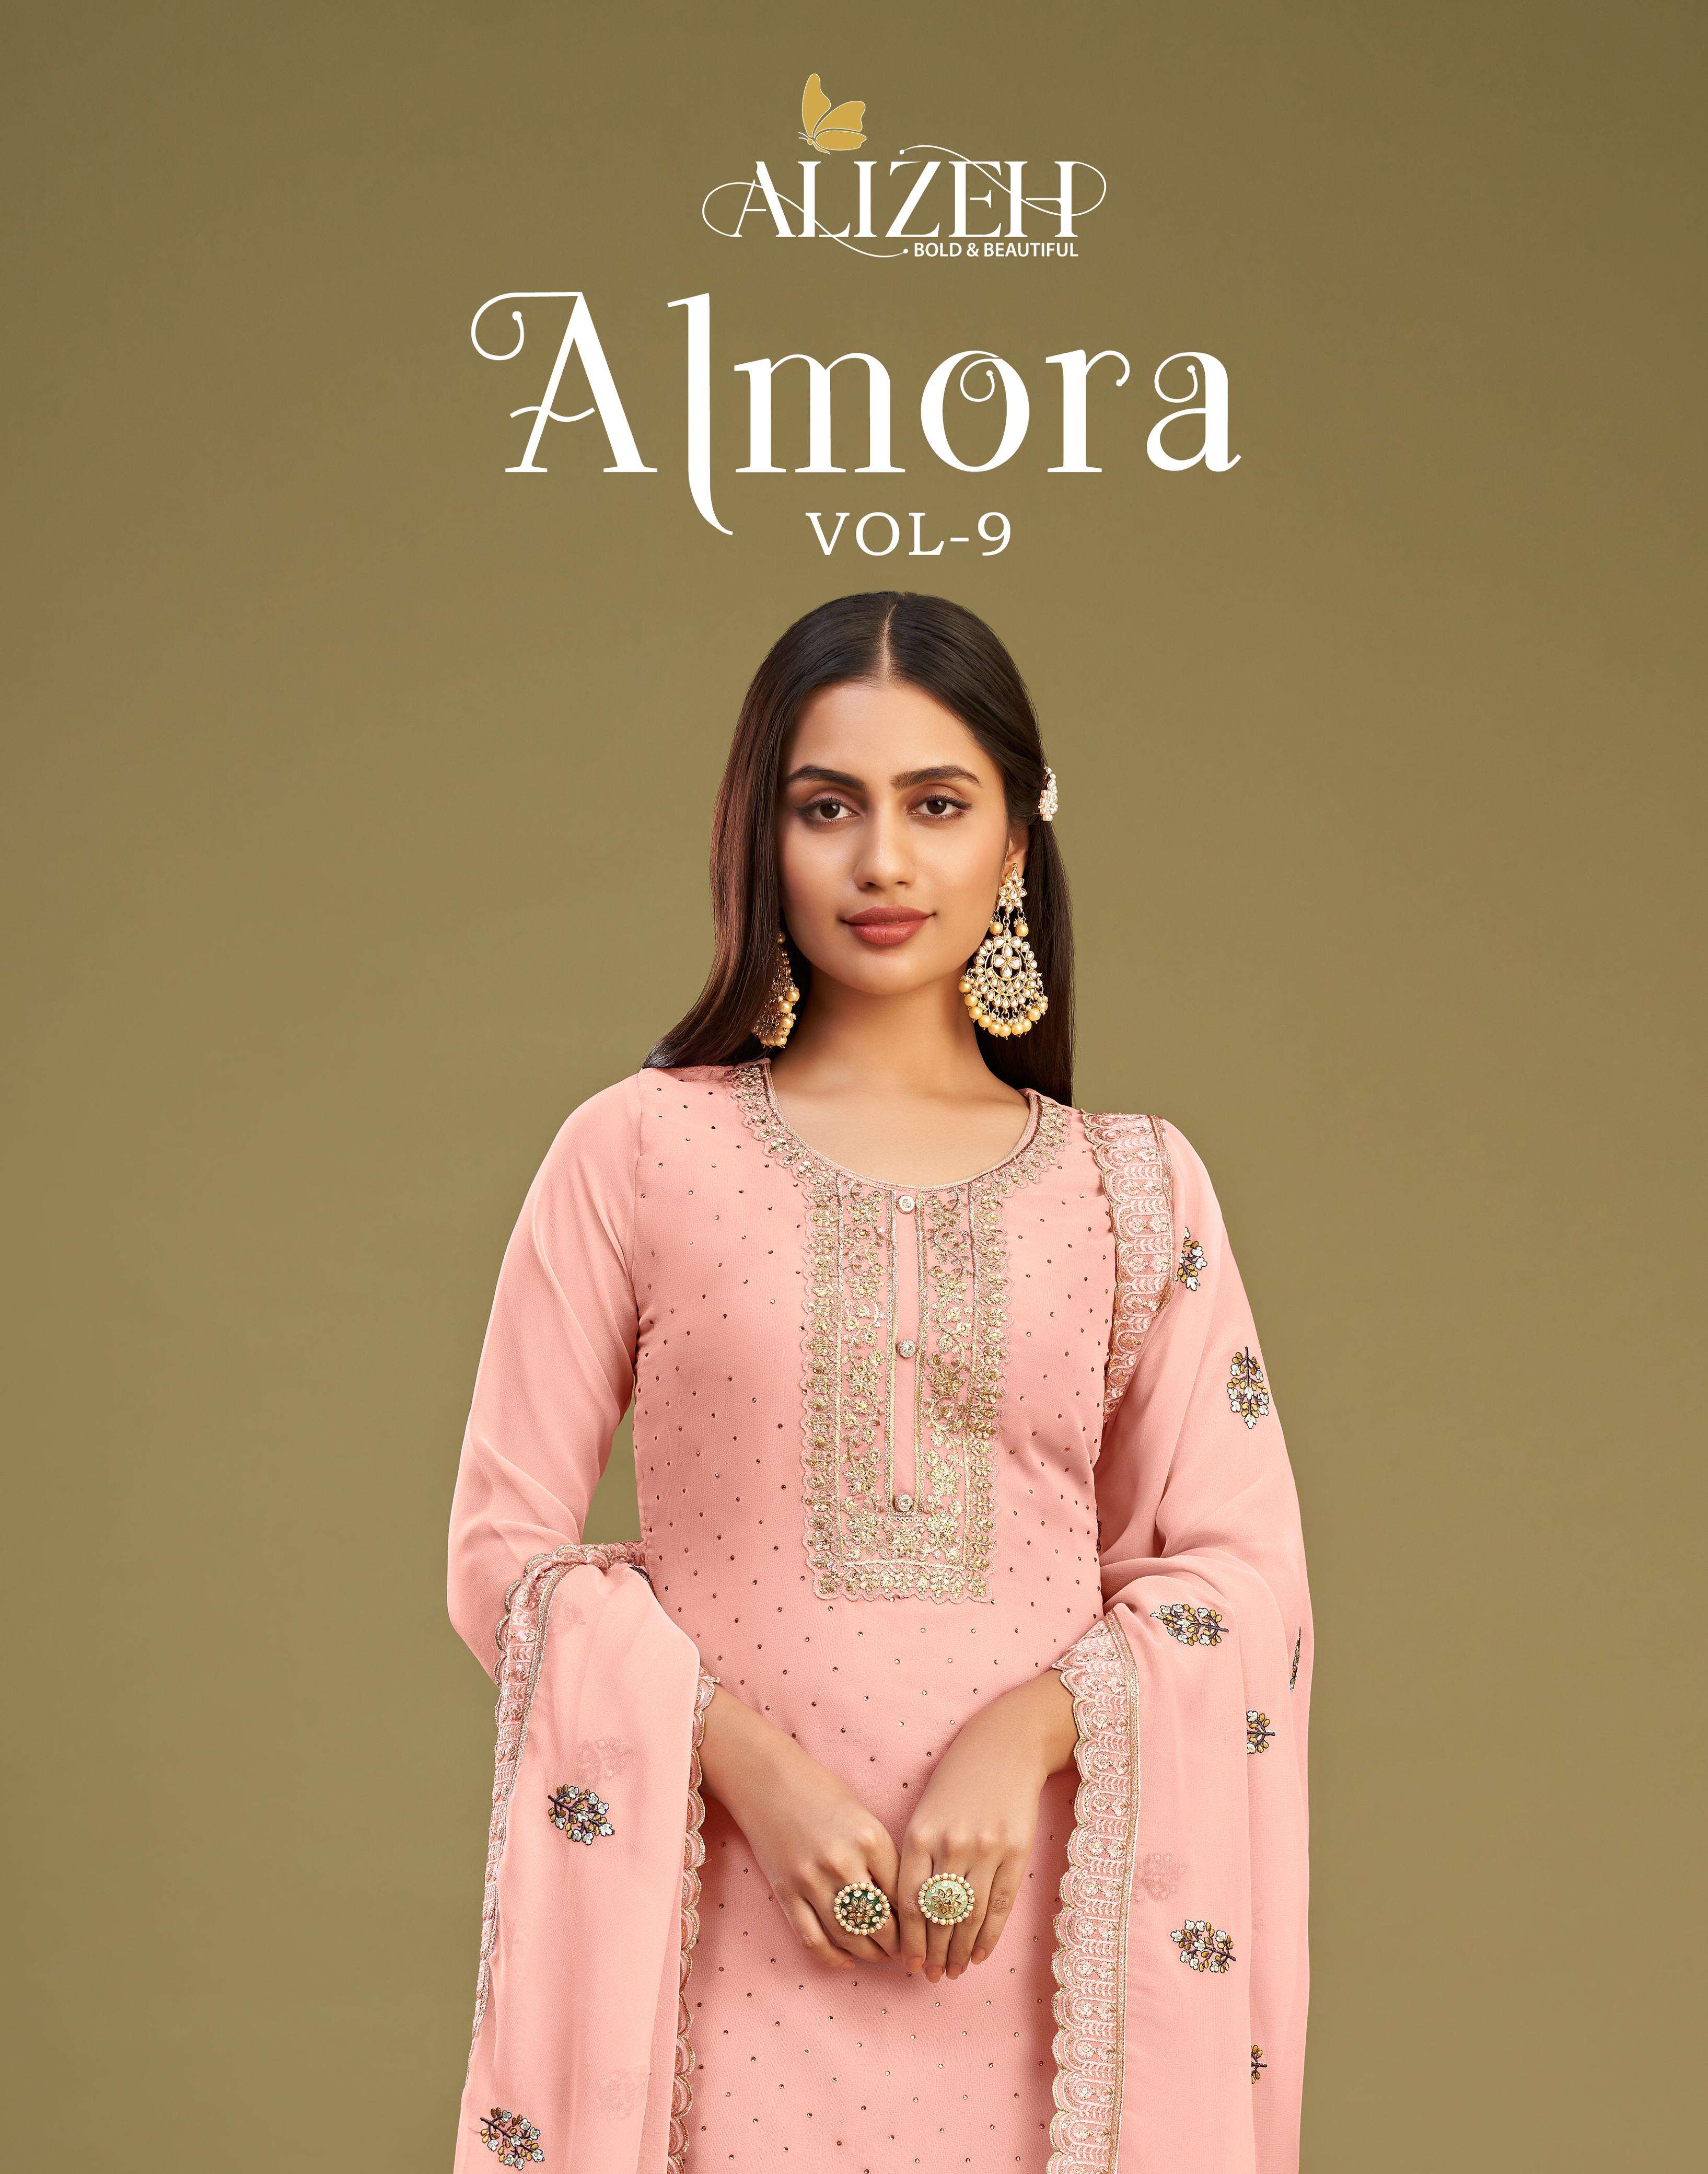 almora vol 9 by alizeh designer elegant traditional semistitch salwar kameez